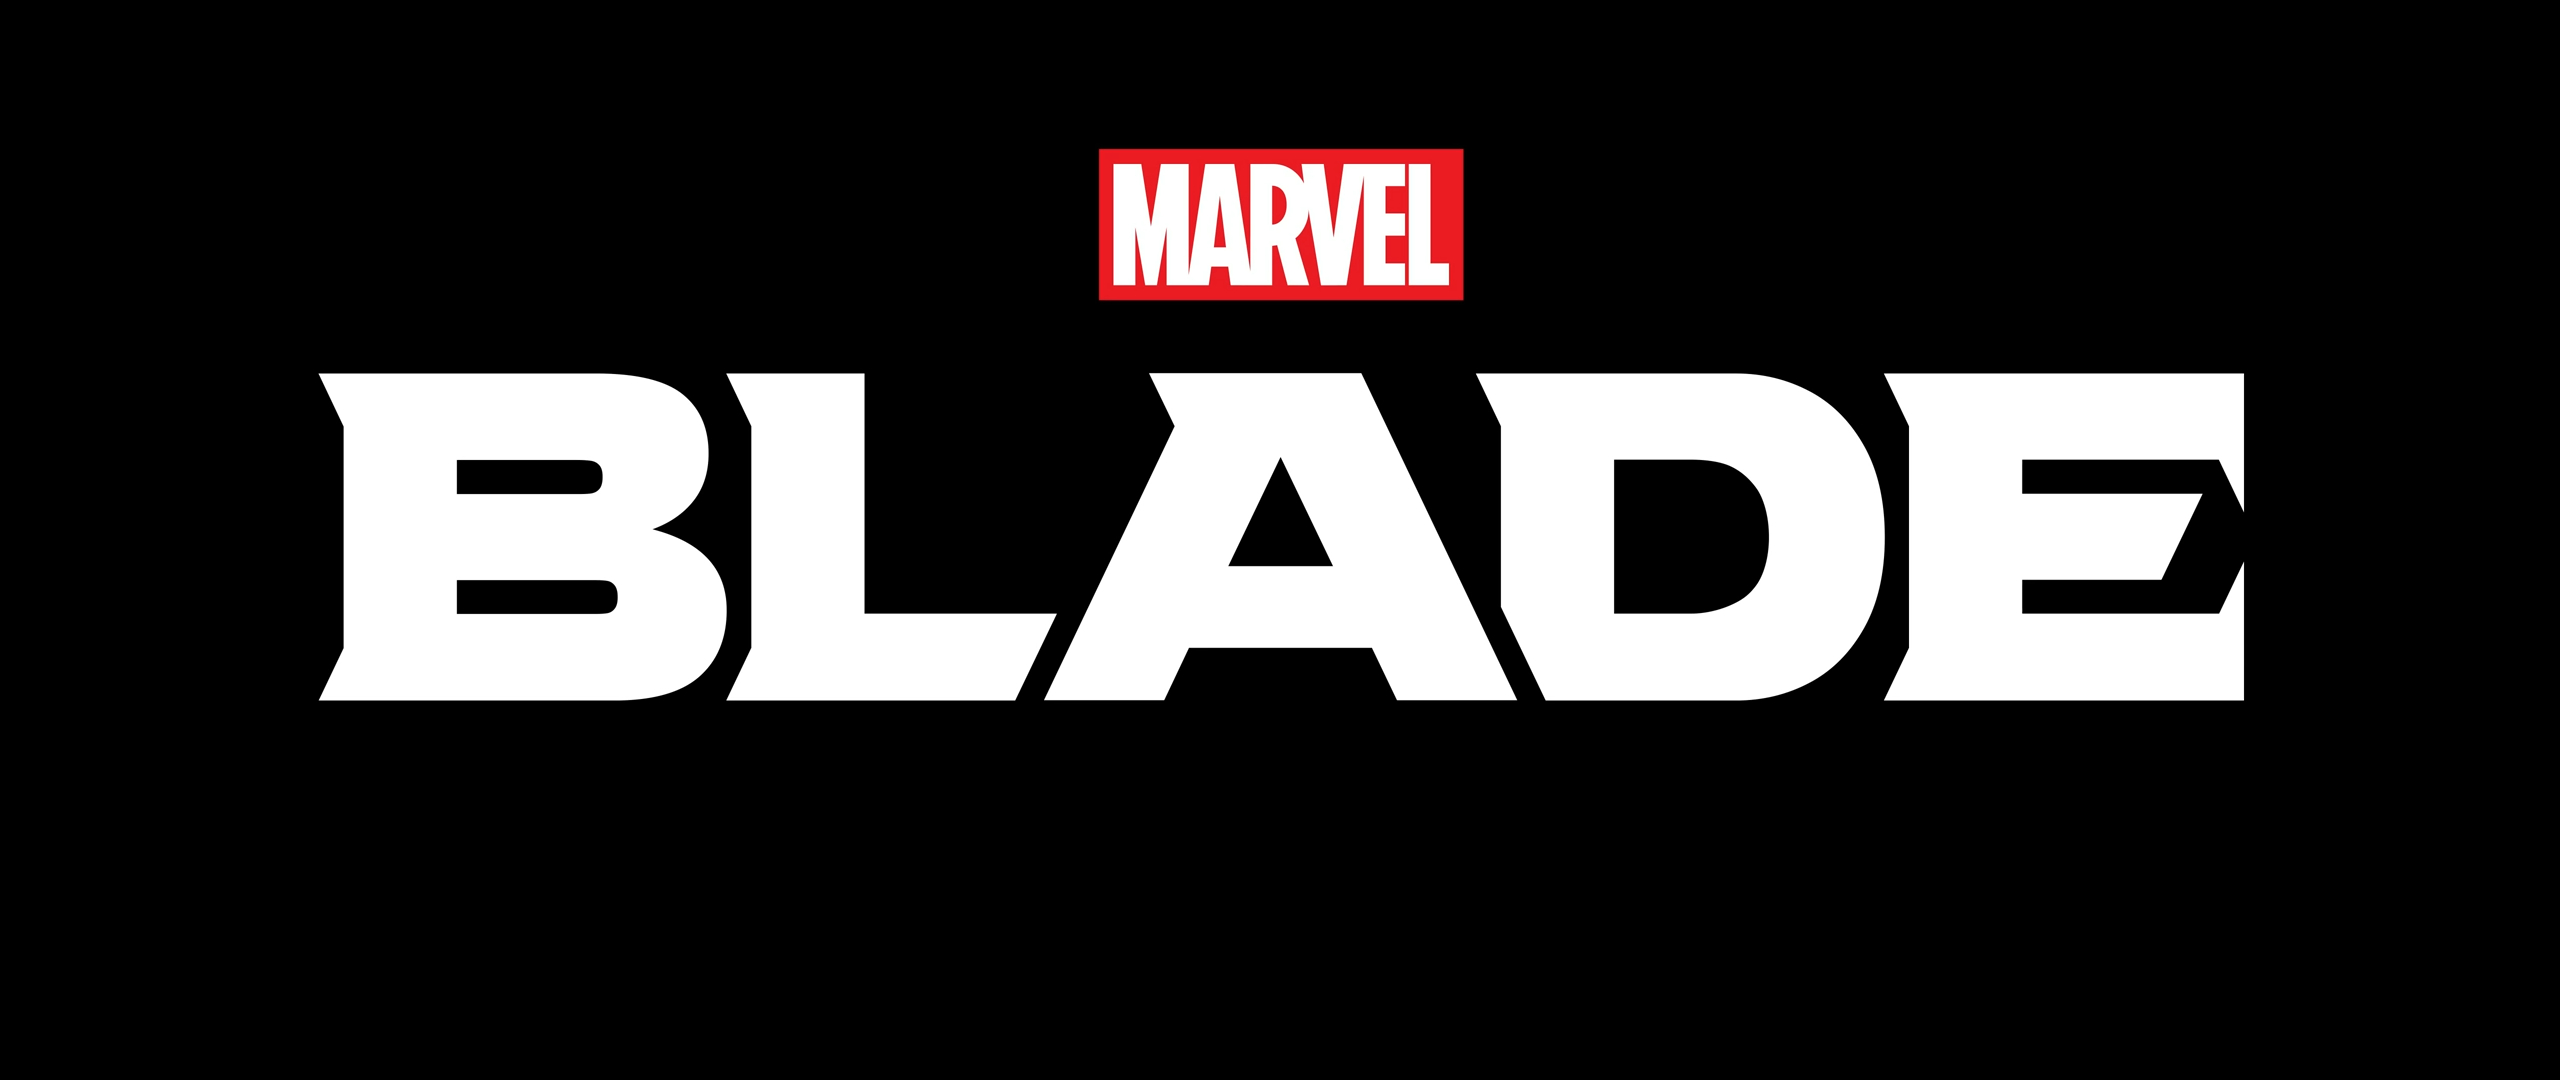 Imagem mostra cena do teaser de Marvel's Blade, nobvo jogo da editora de quadrinhos